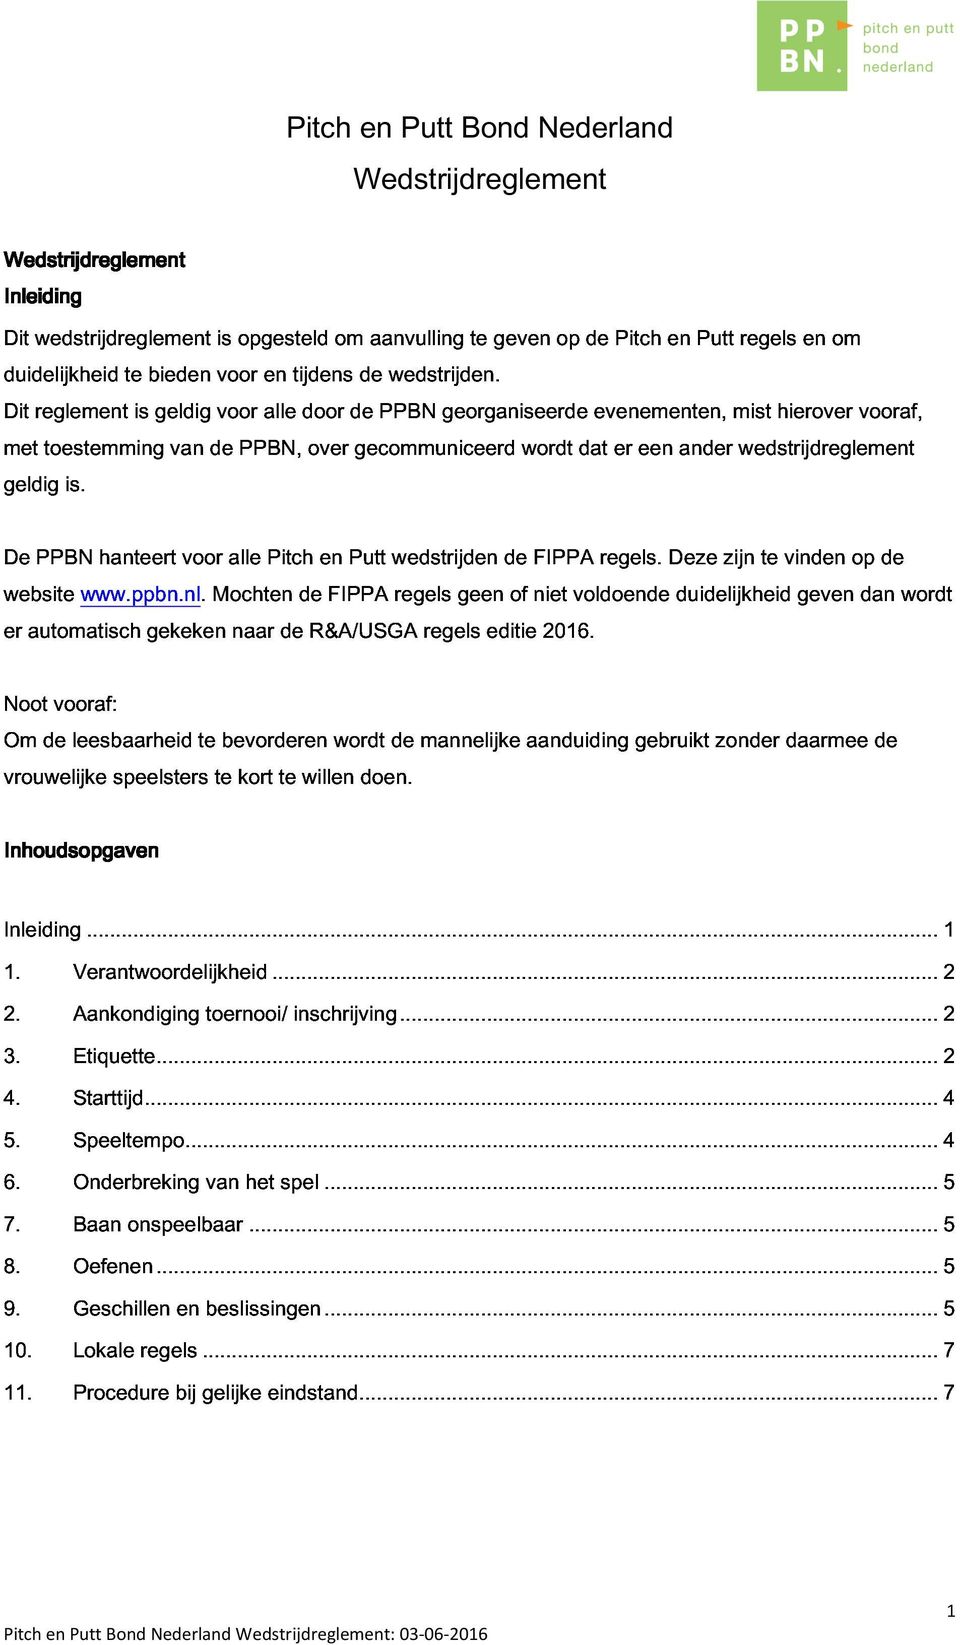 van de PPBN, over gecommuniceerd georganiseerde wordt dat evenementen, er een ander mist wedstrijdreglement hierover vooraf, er De website automatisch PPBN www.ppbn.nl.